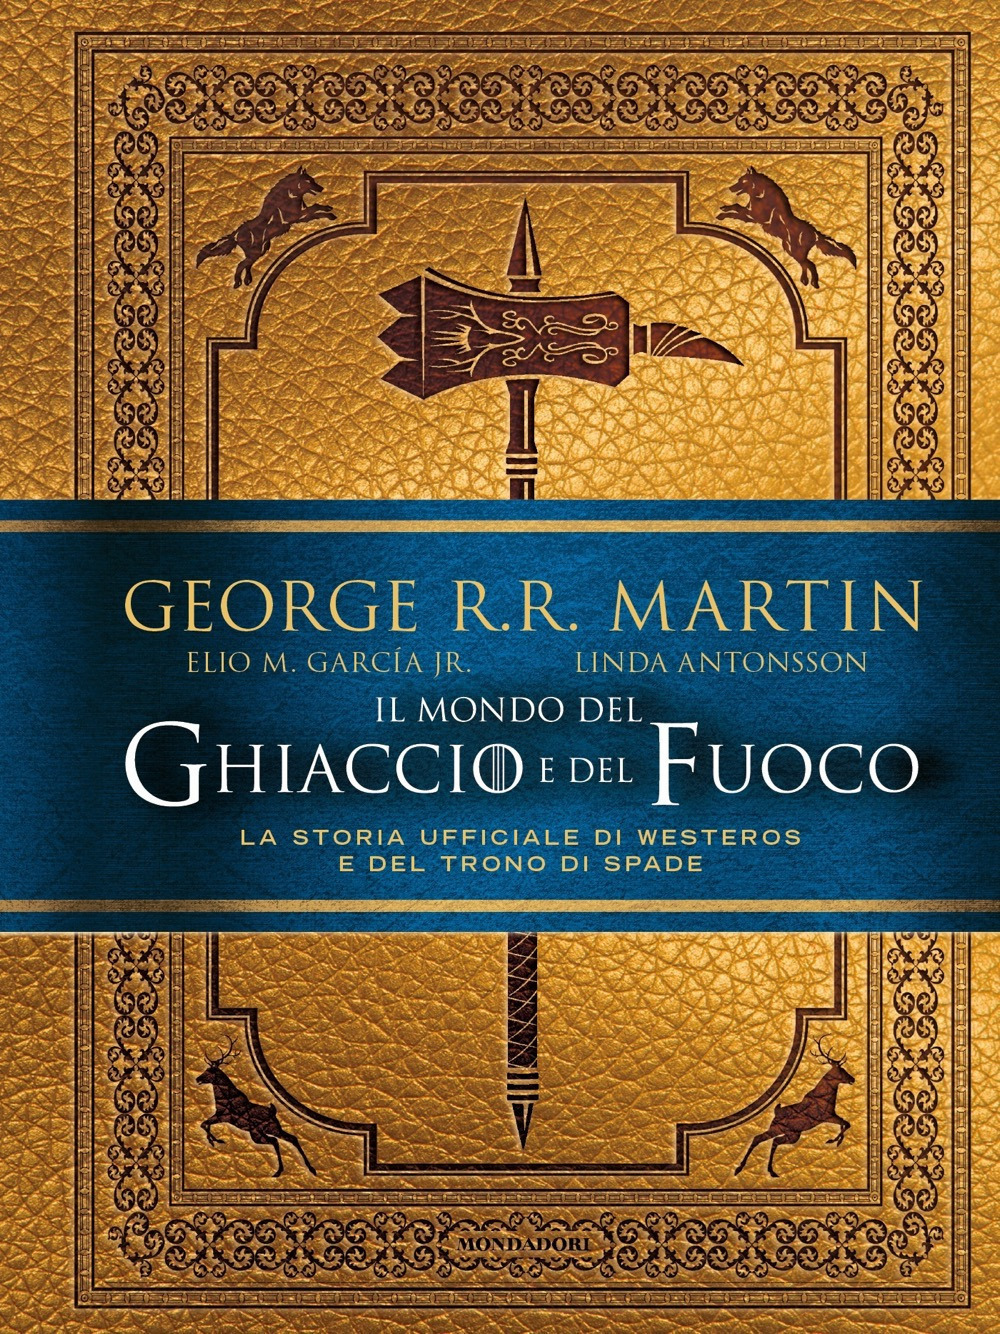 Il mondo del ghiaccio e del fuoco. La storia ufficiale di Westeros e del Trono di spade - George R. R. Martin - Mondadori